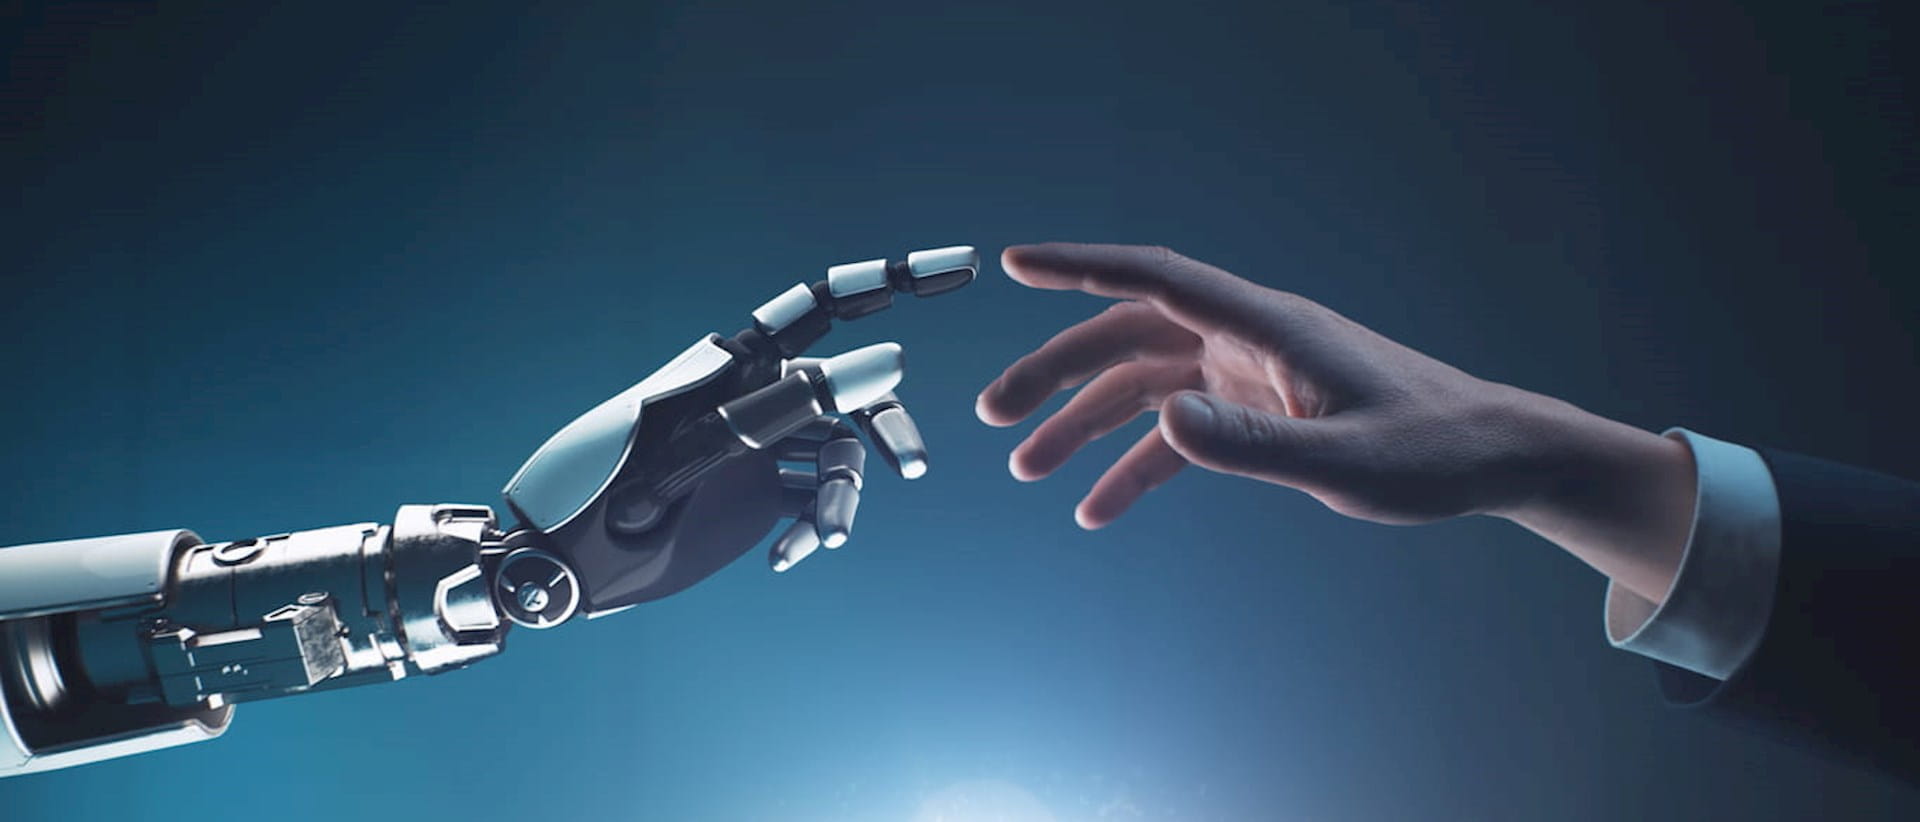 Human hand touching robot hand